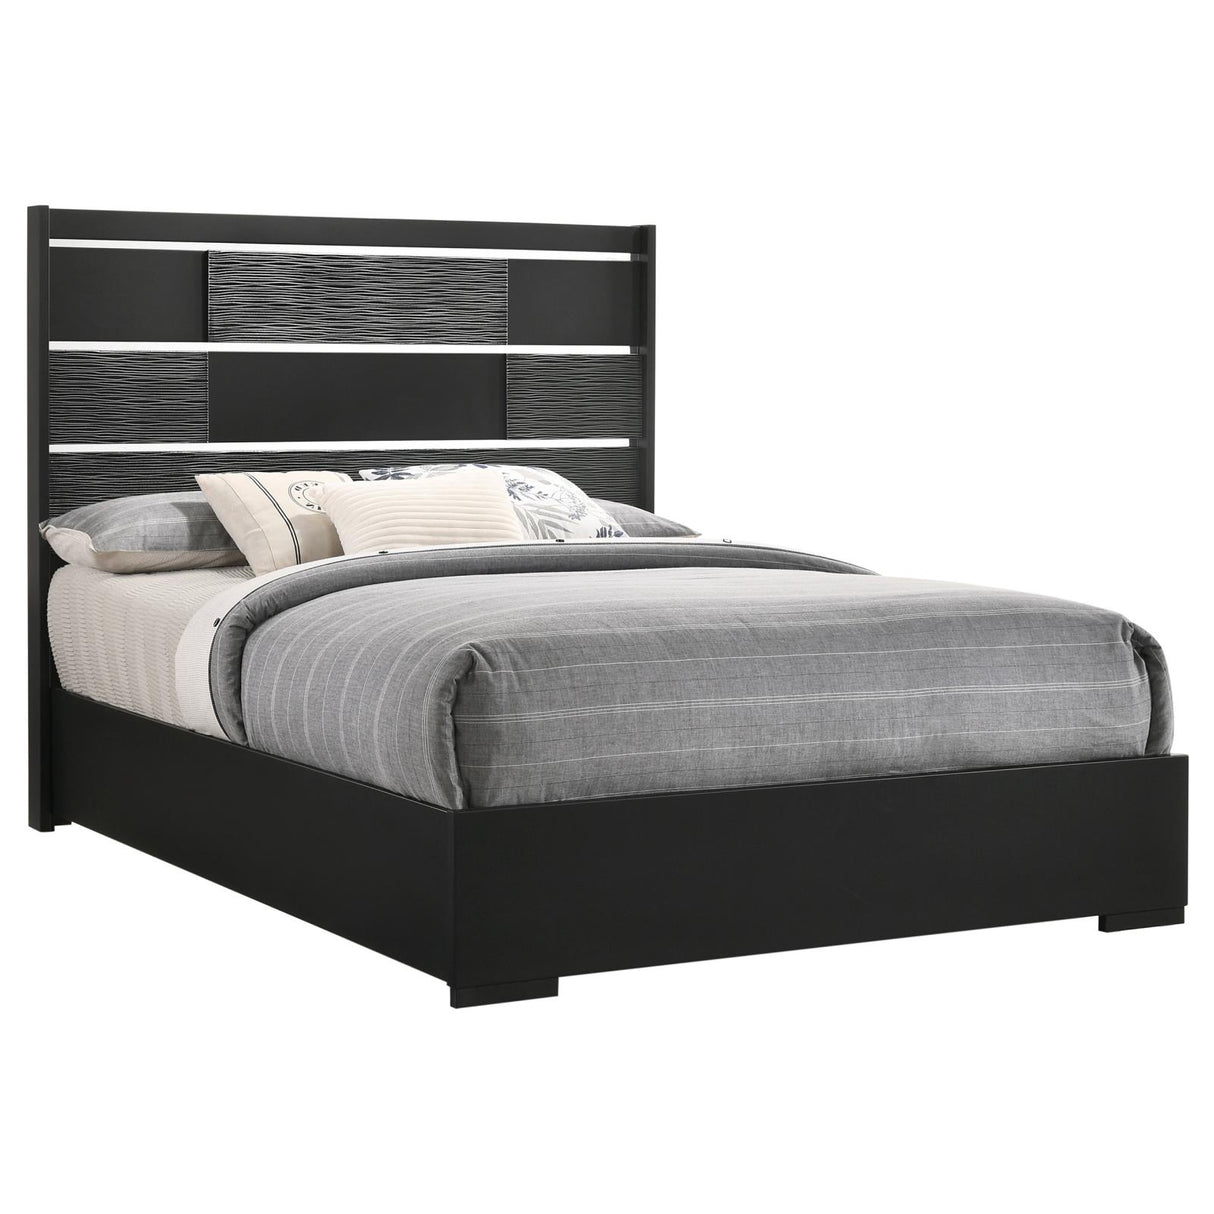 Blacktoft Eastern King Panel Bed Black - 207101KE - Luna Furniture